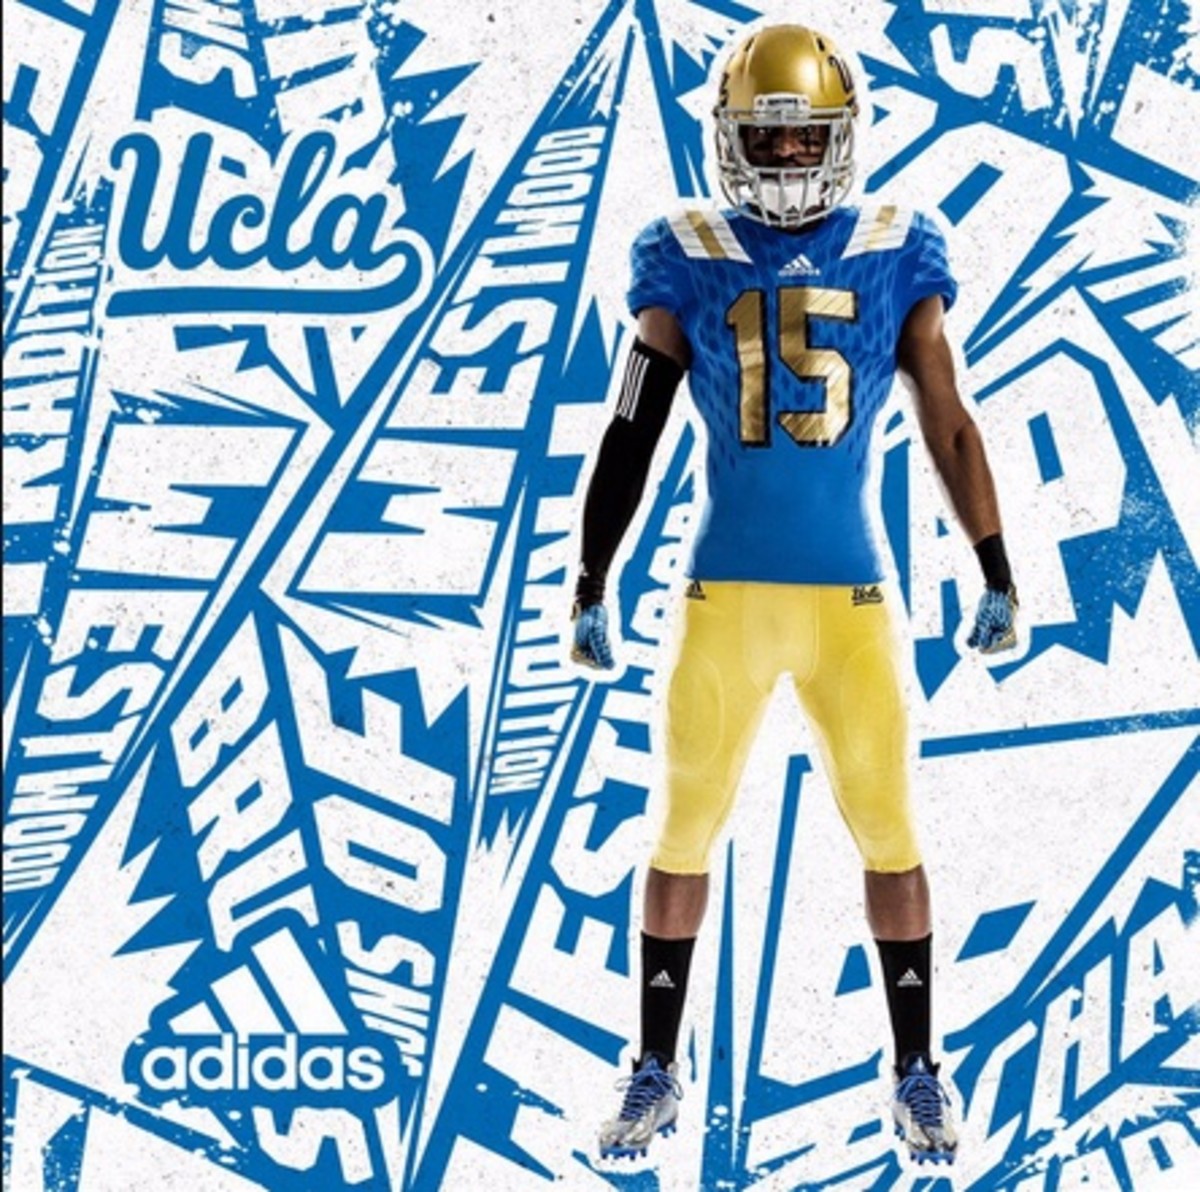 UCLA1